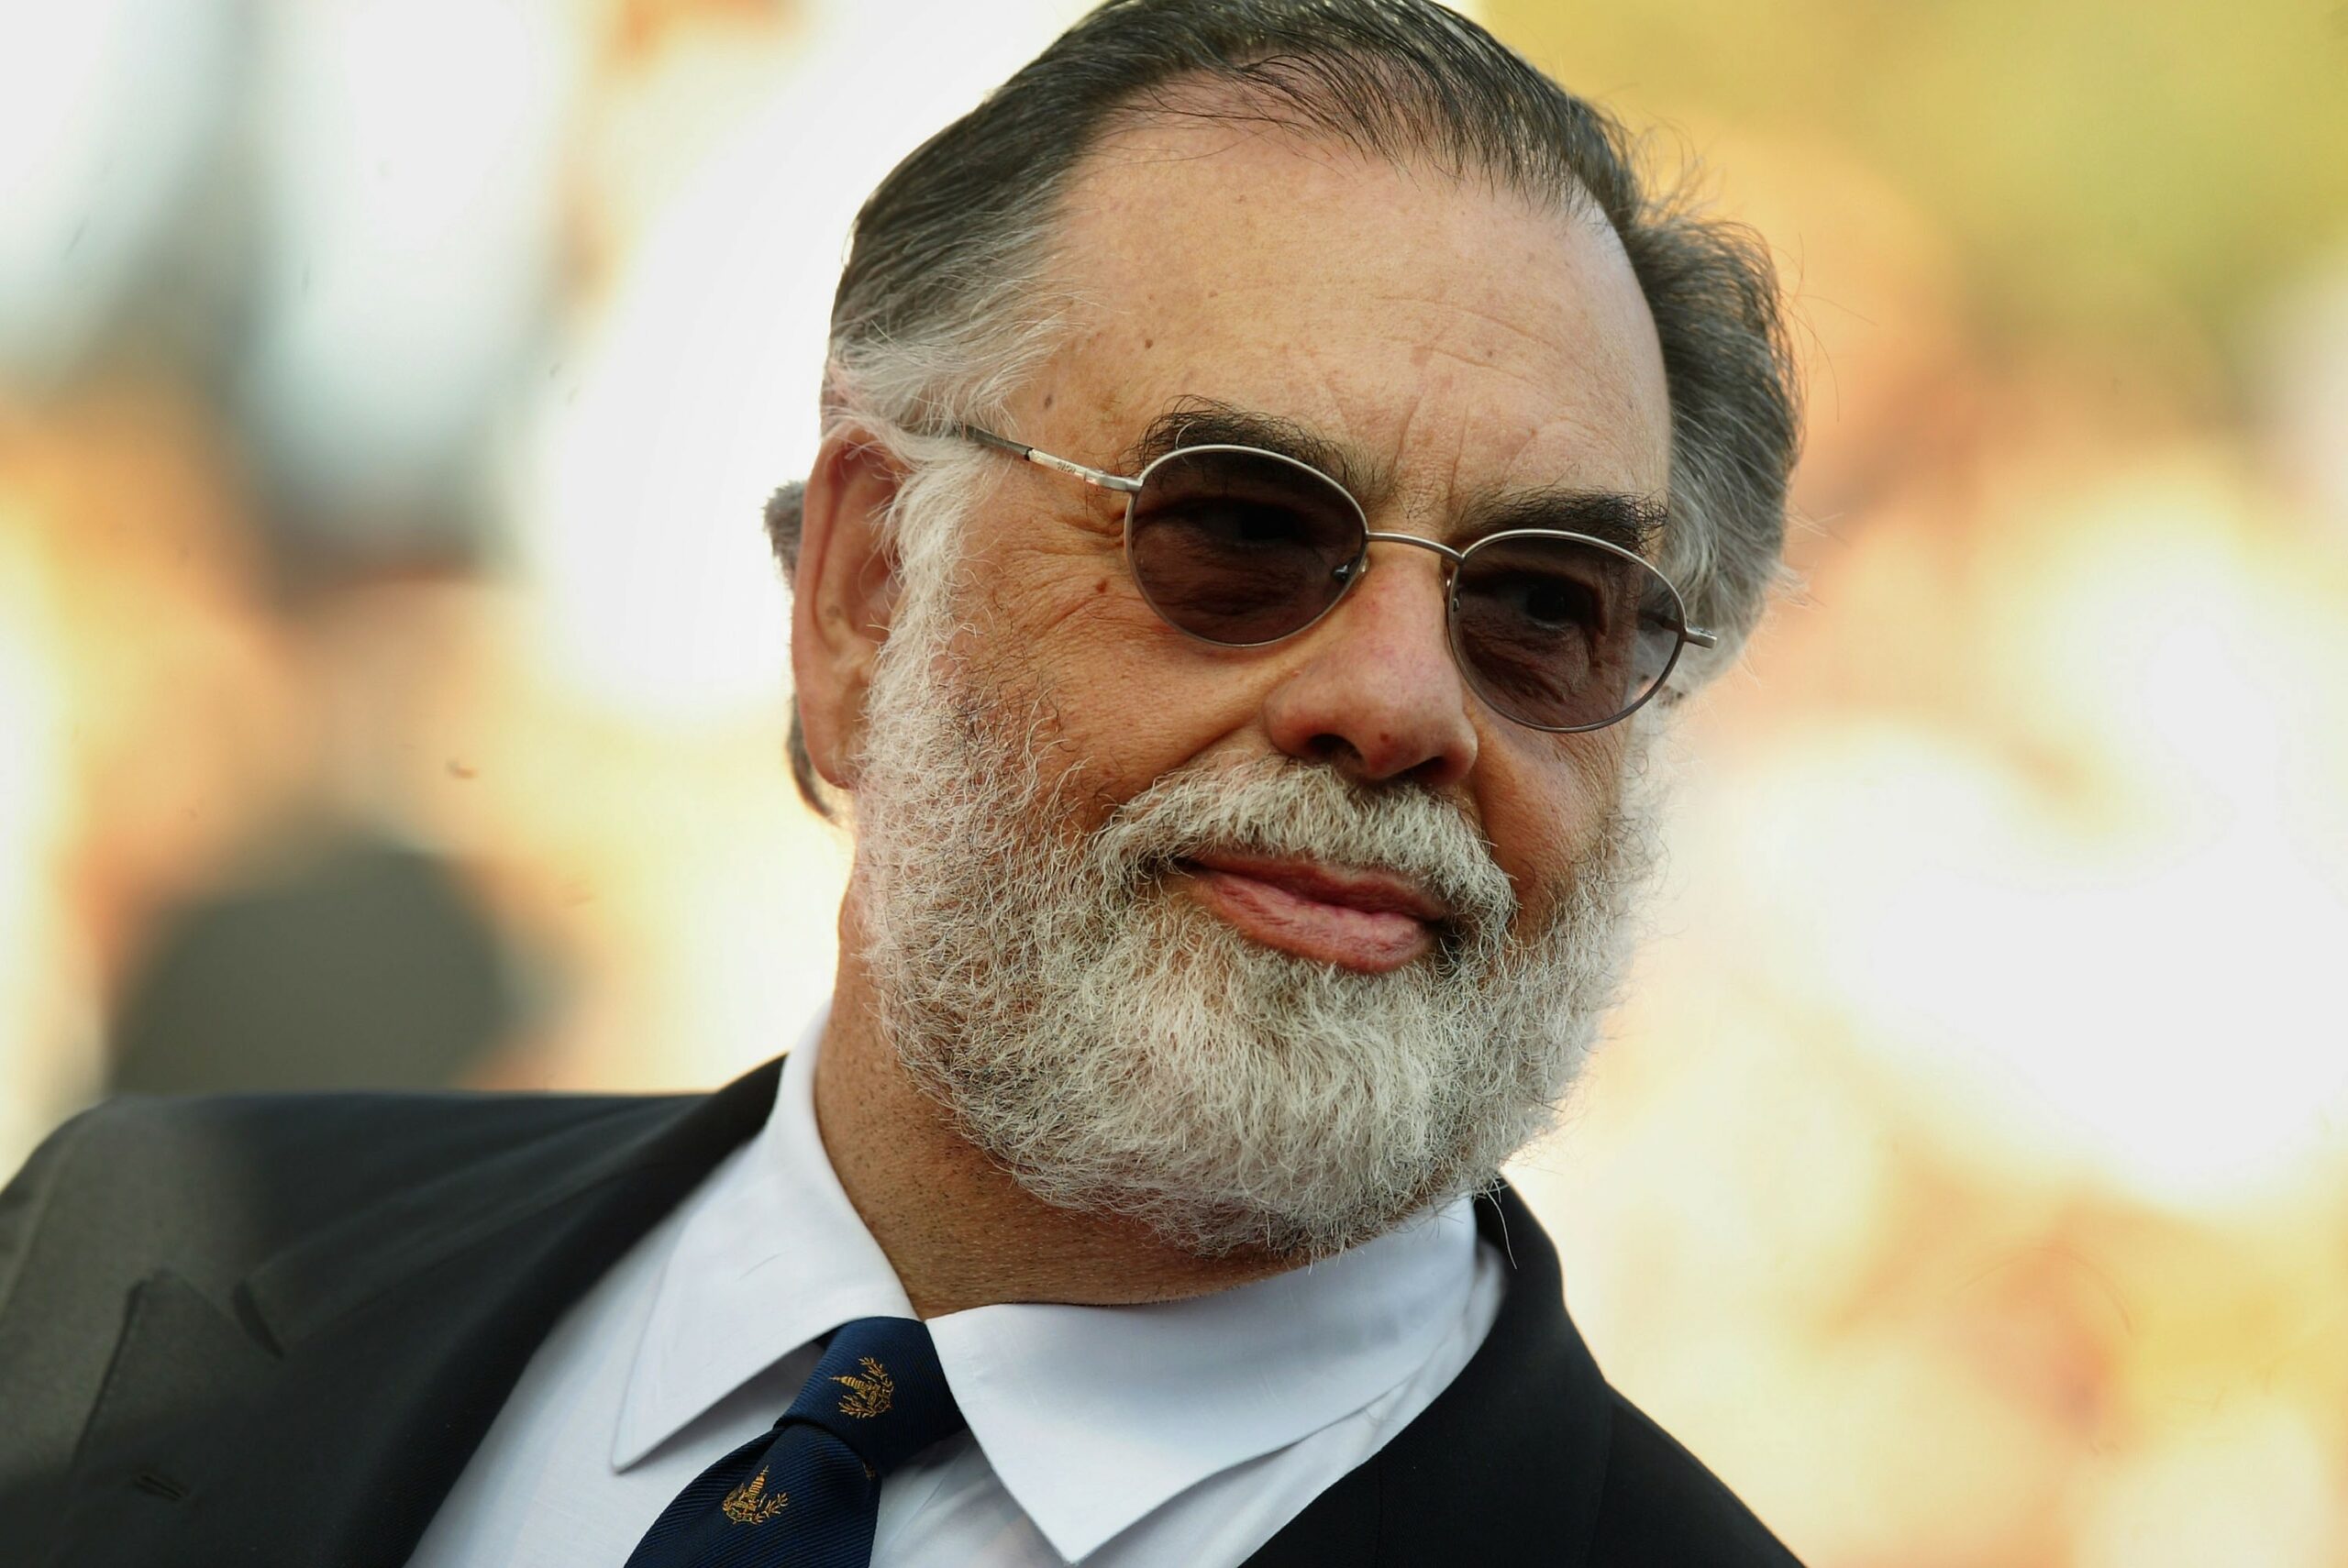 Francis Ford Coppola có phải là tỷ phú không?